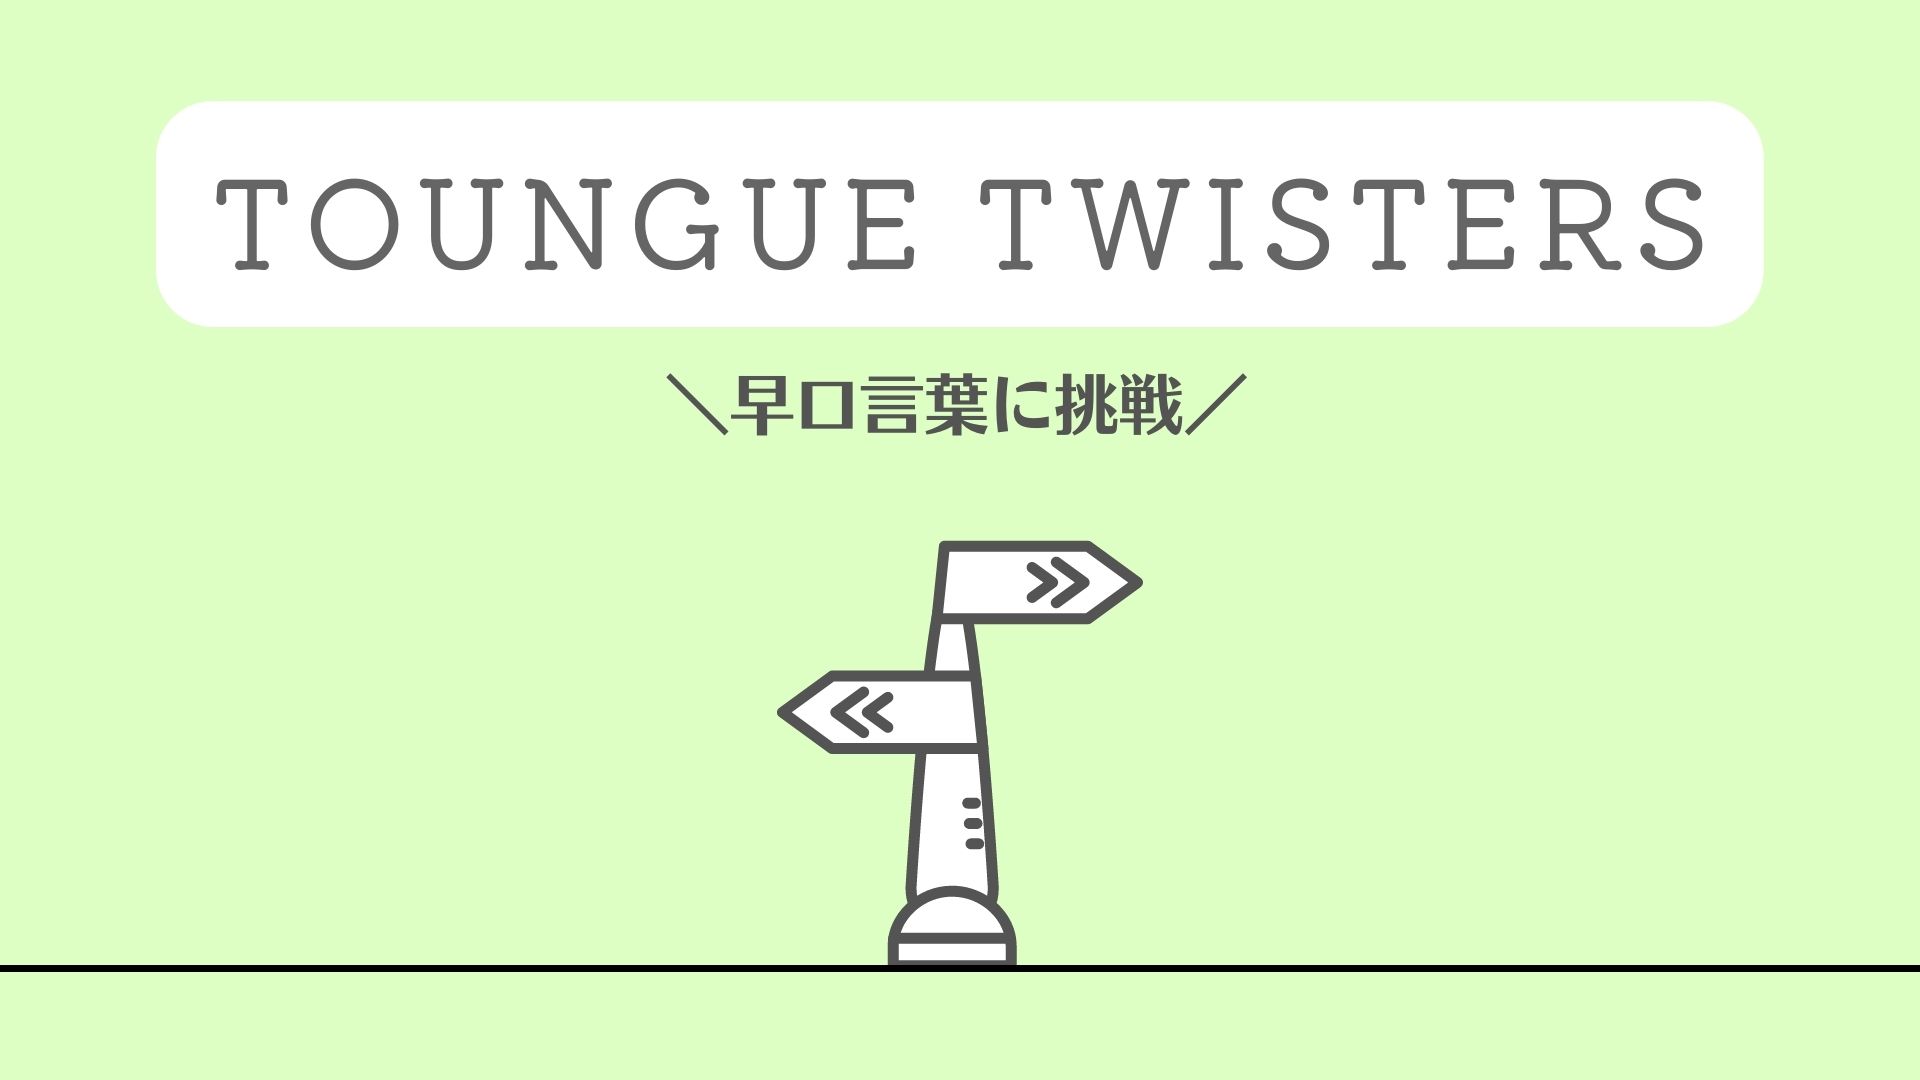 英語の早口言葉、タングツイスターズ、Toungue Twisters、英語のウォームアップ